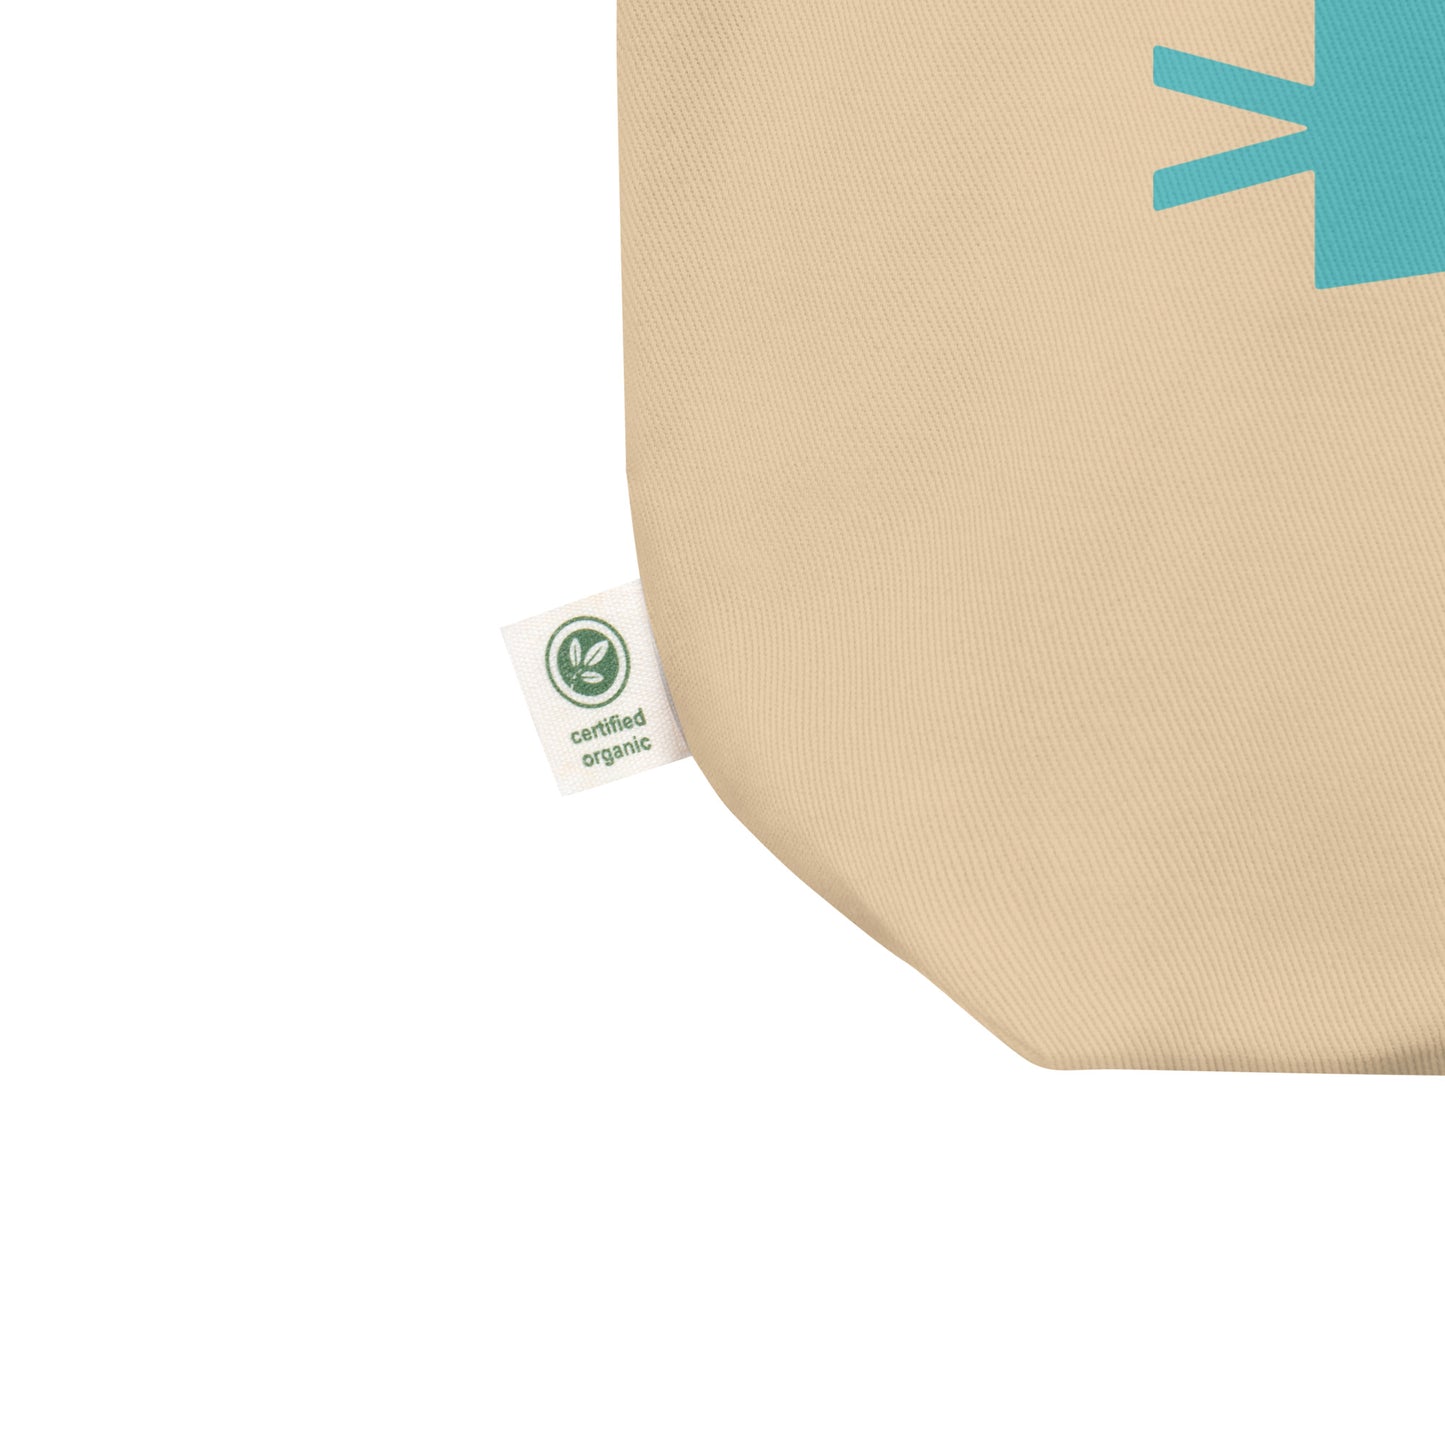 Cool Travel Gift Organic Tote Bag - Viking Blue • SEA Seattle • YHM Designs - Image 02